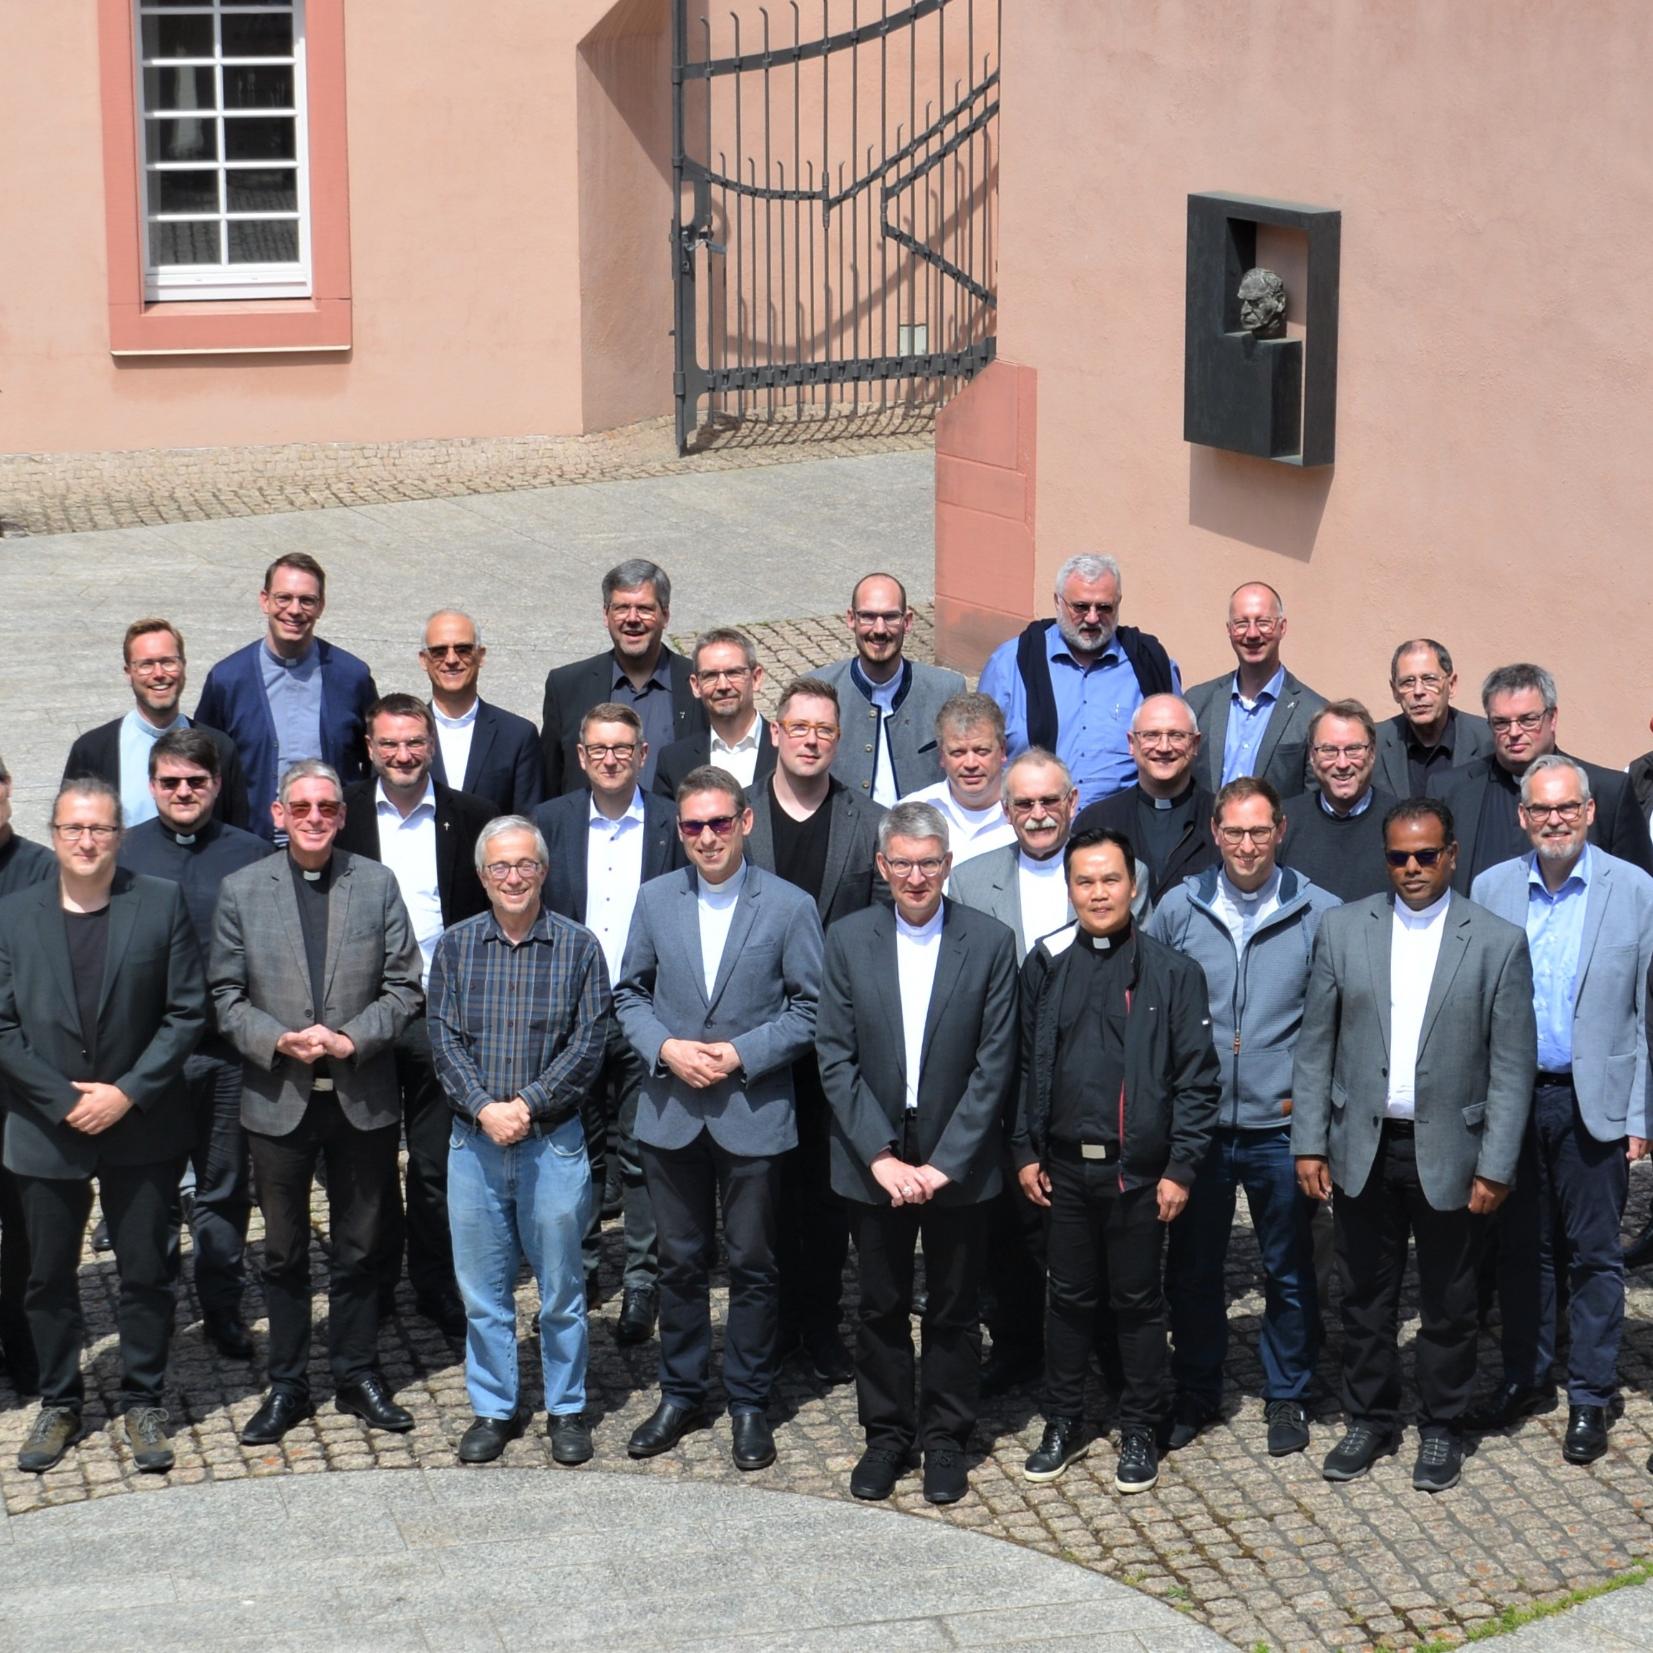 Mainz, 1. Juni 2022: Erstmals tagte die Konferenz der Leitenden Pfarrer im Erbacher Hof in Mainz.